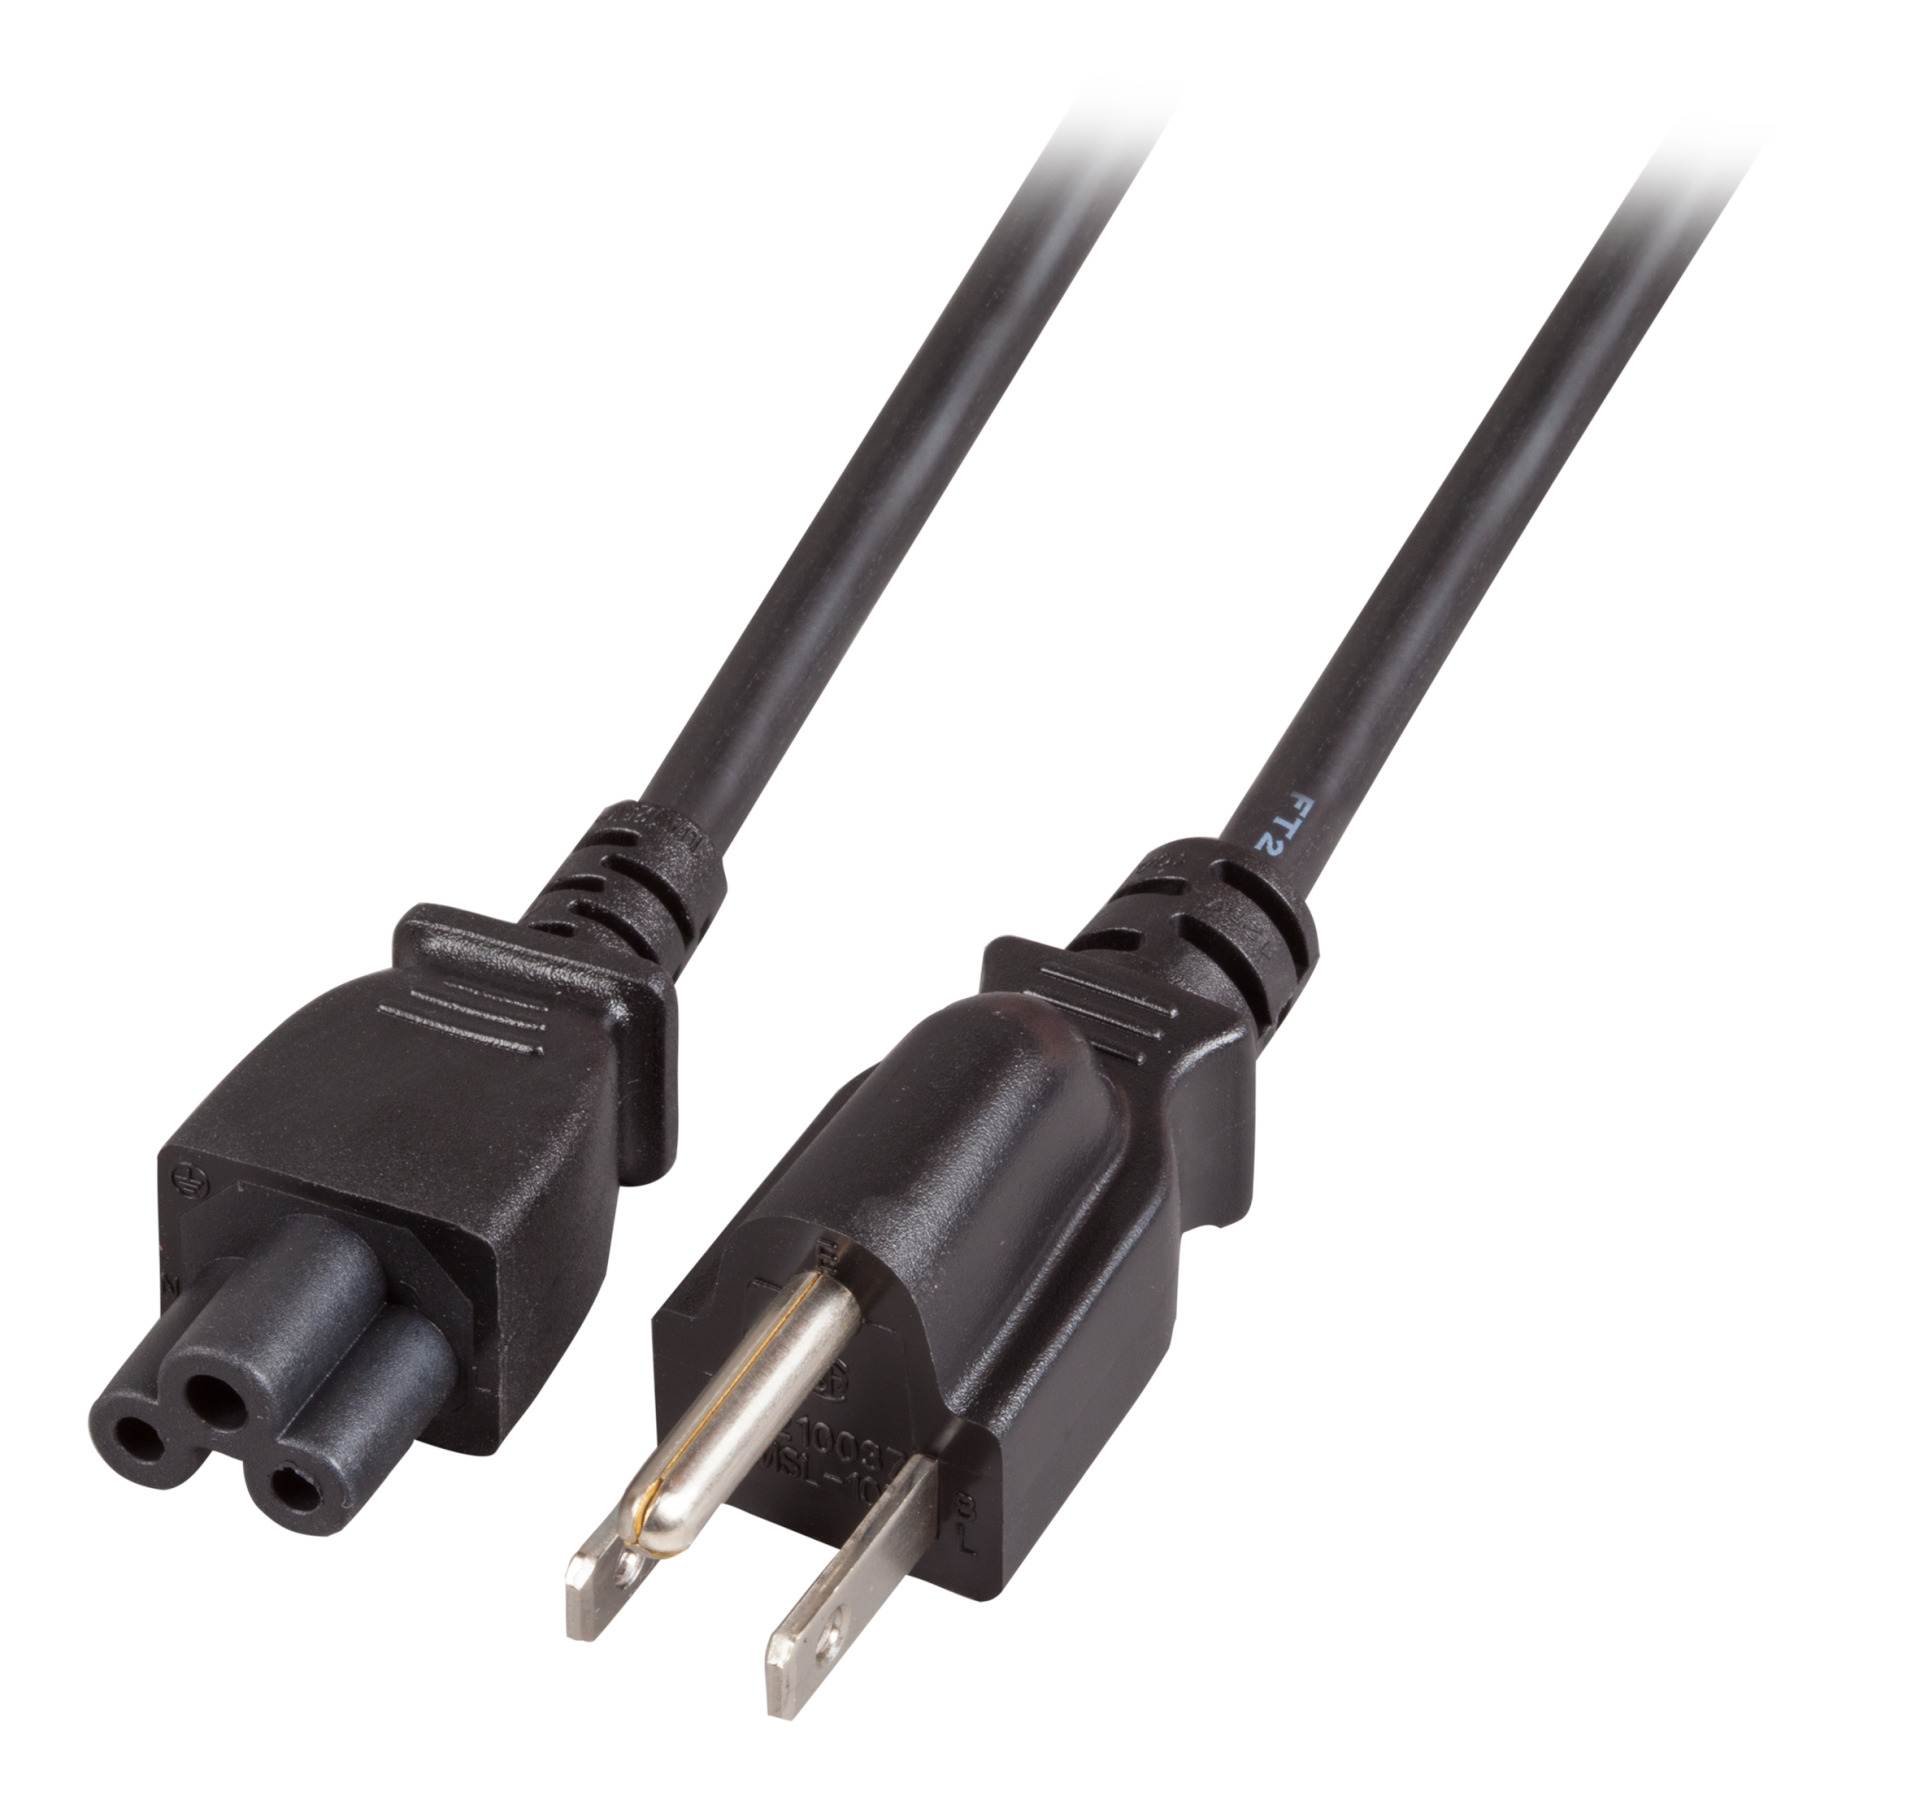 Power Cable USA/NEMA 5-15P - C5 180°, Black, 1.8 m, SVT AWG18 x 3C